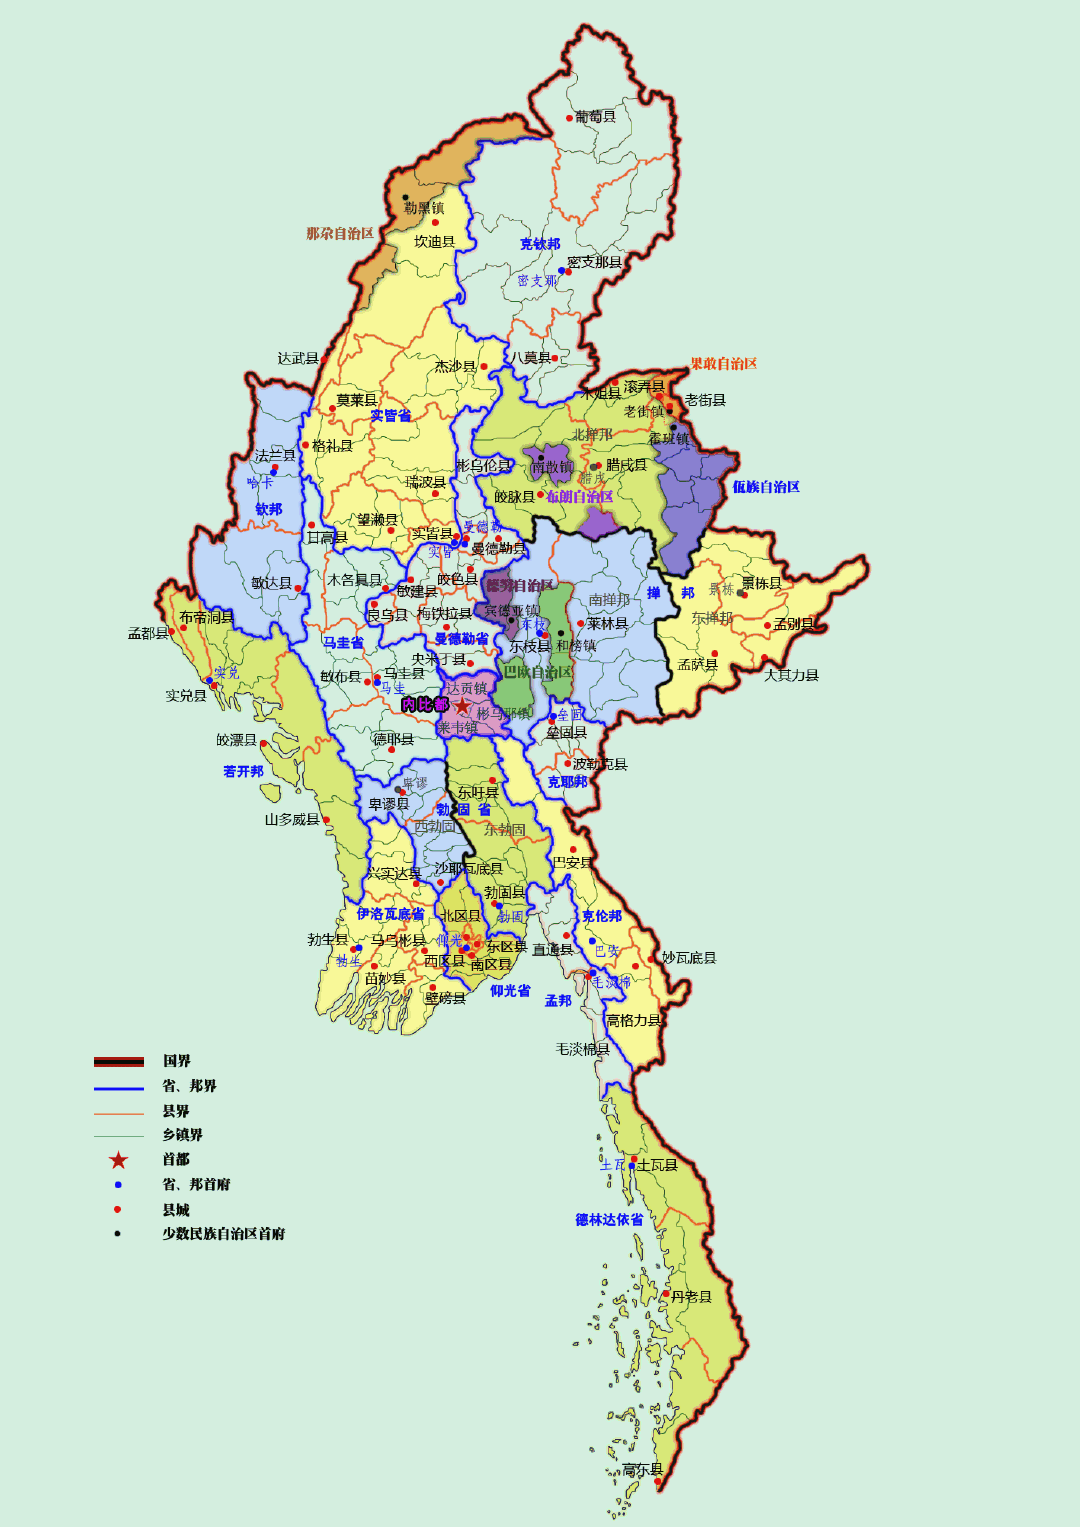 缅甸江心坡的民族矛盾事关克钦独立或高度自治事业的成败